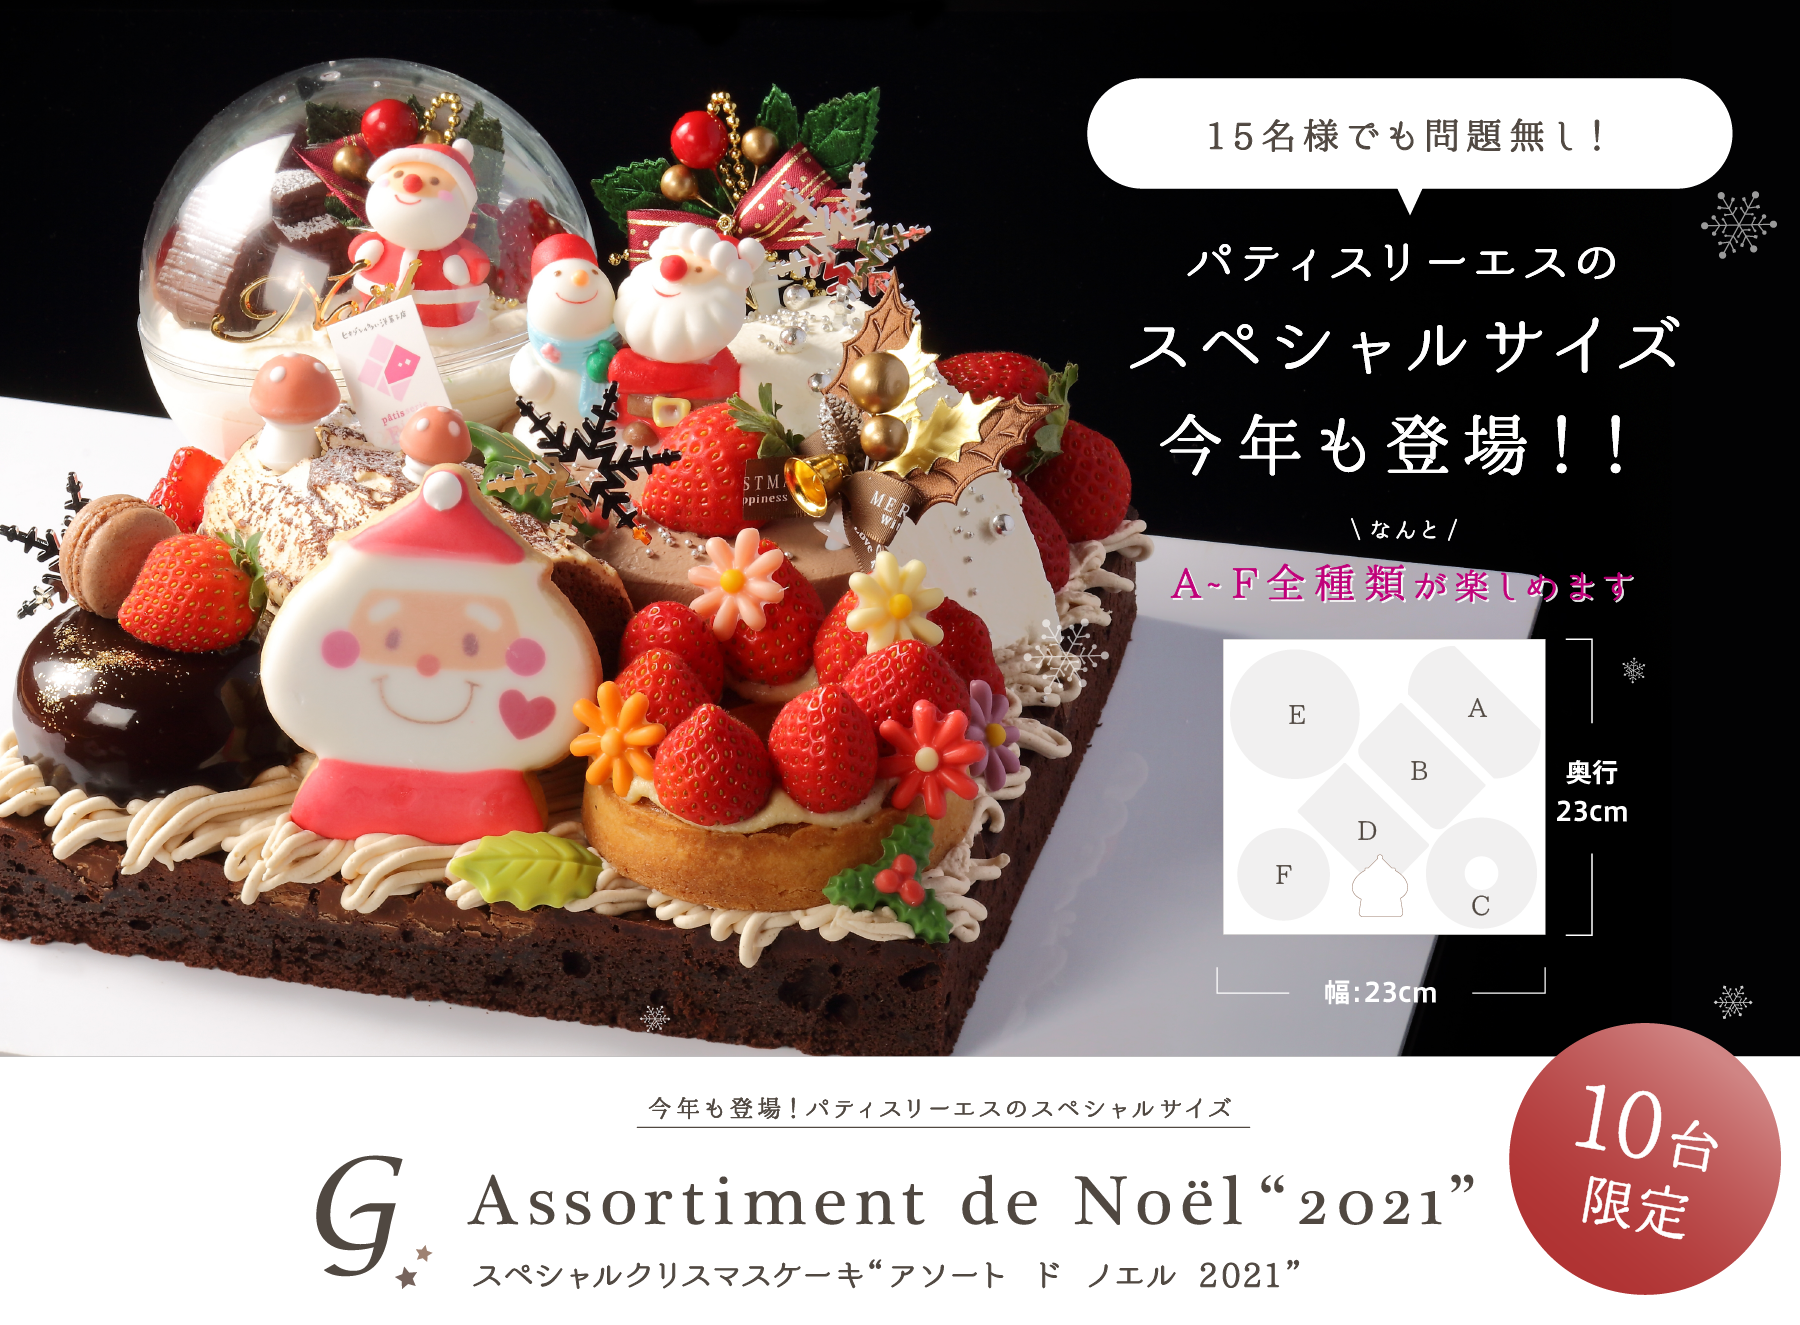 スペシャルクリスマスケーキ“アソート ド ノエル 2021”